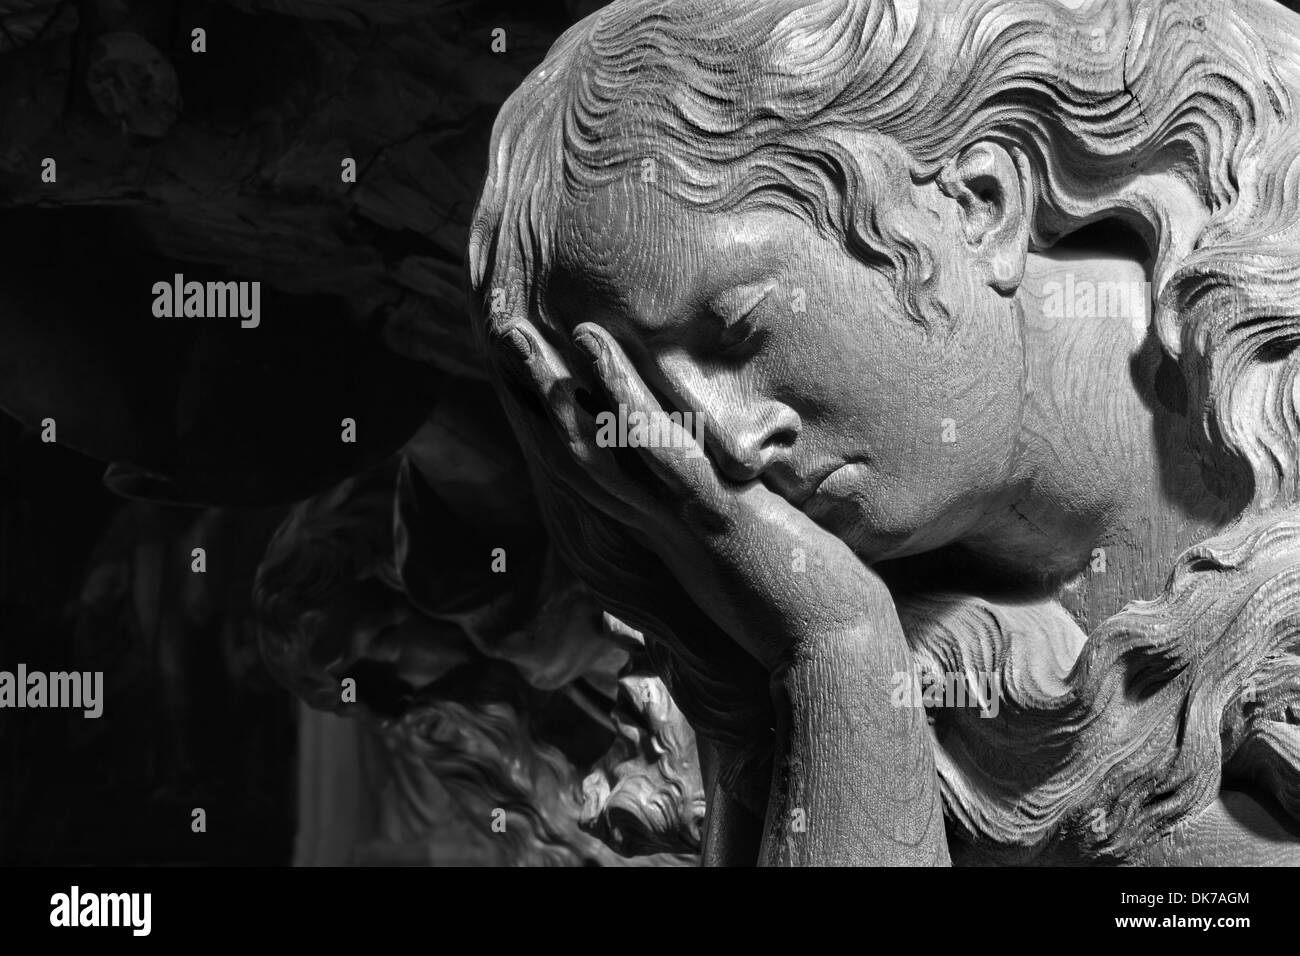 MECHELEN - 4 SEPTEMBER: Geschnitzte Relief rief Engels in Onze-Lieve-Vrouw-va-n-Hanswijkbasiliek-Kirche Stockfoto